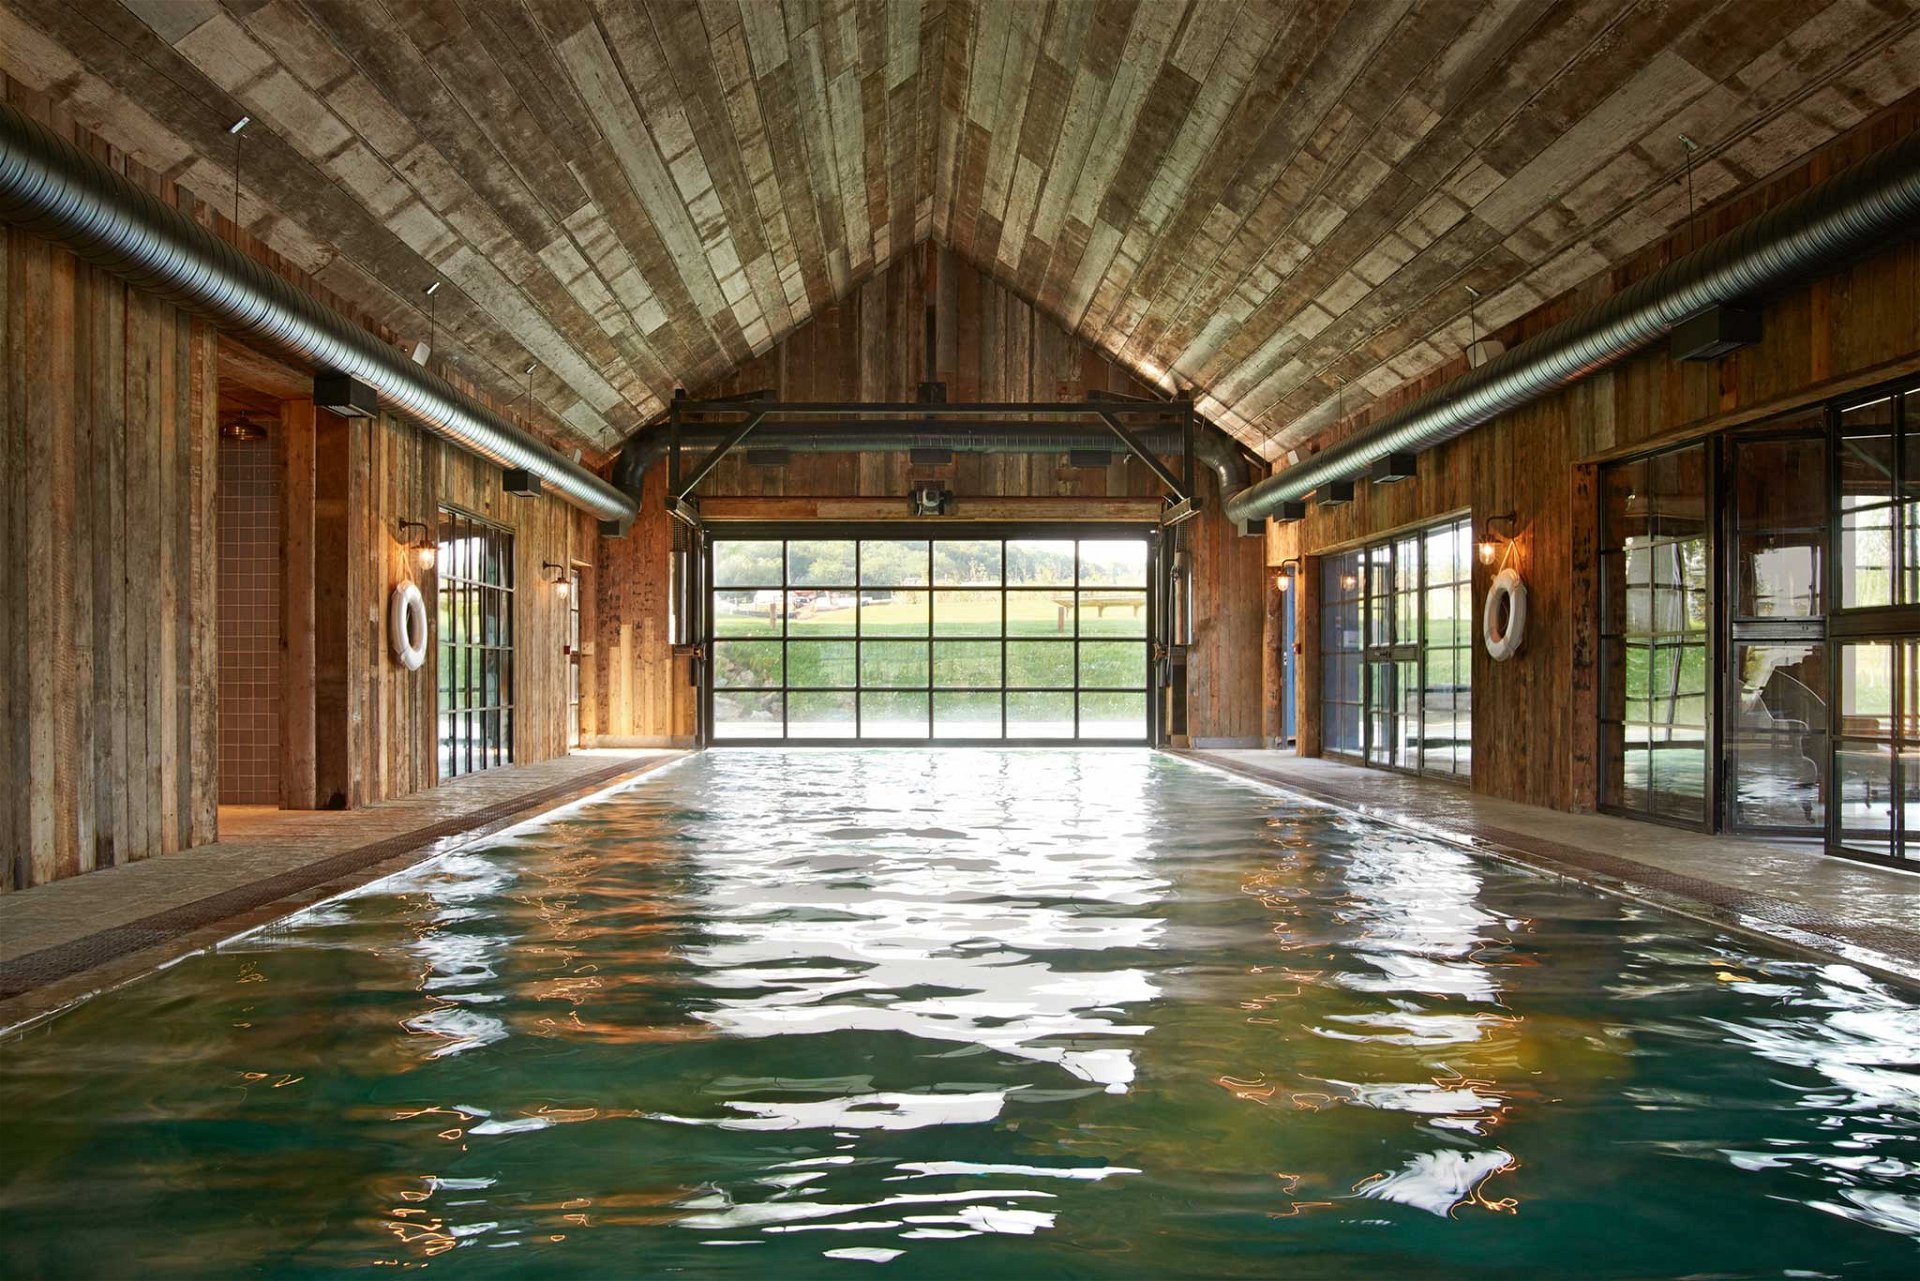 Soho FarmhousE, Oxfordshire, UK: Für den 16-Meter-Indoor-Pool ließ man sich von einem Bootshaus inspirieren. Landhausromantik in Holz und Stein, einfach und ehrlich. sohofarmhouse.com